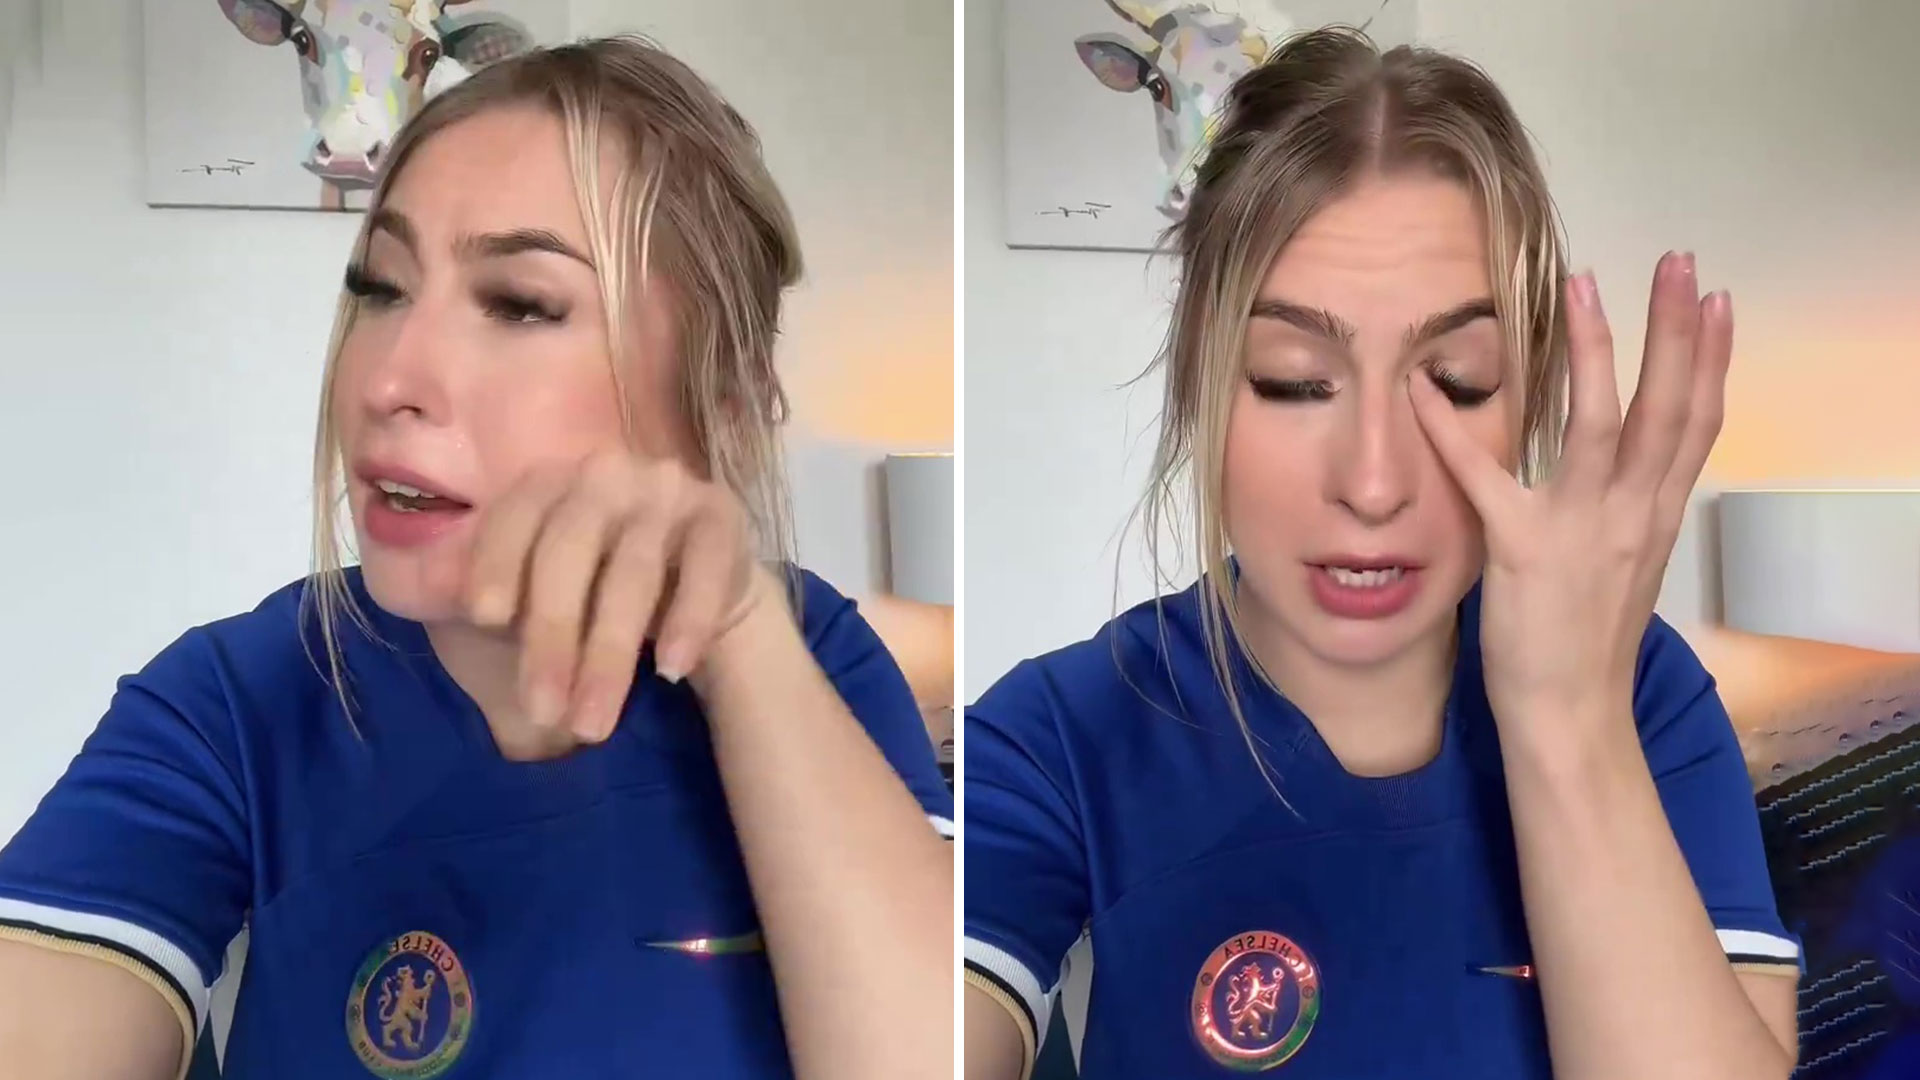 Astrid Wett breaks down in tears in emotional video with Chelsea fan heartbroken over exit of Blues ‘daddy’